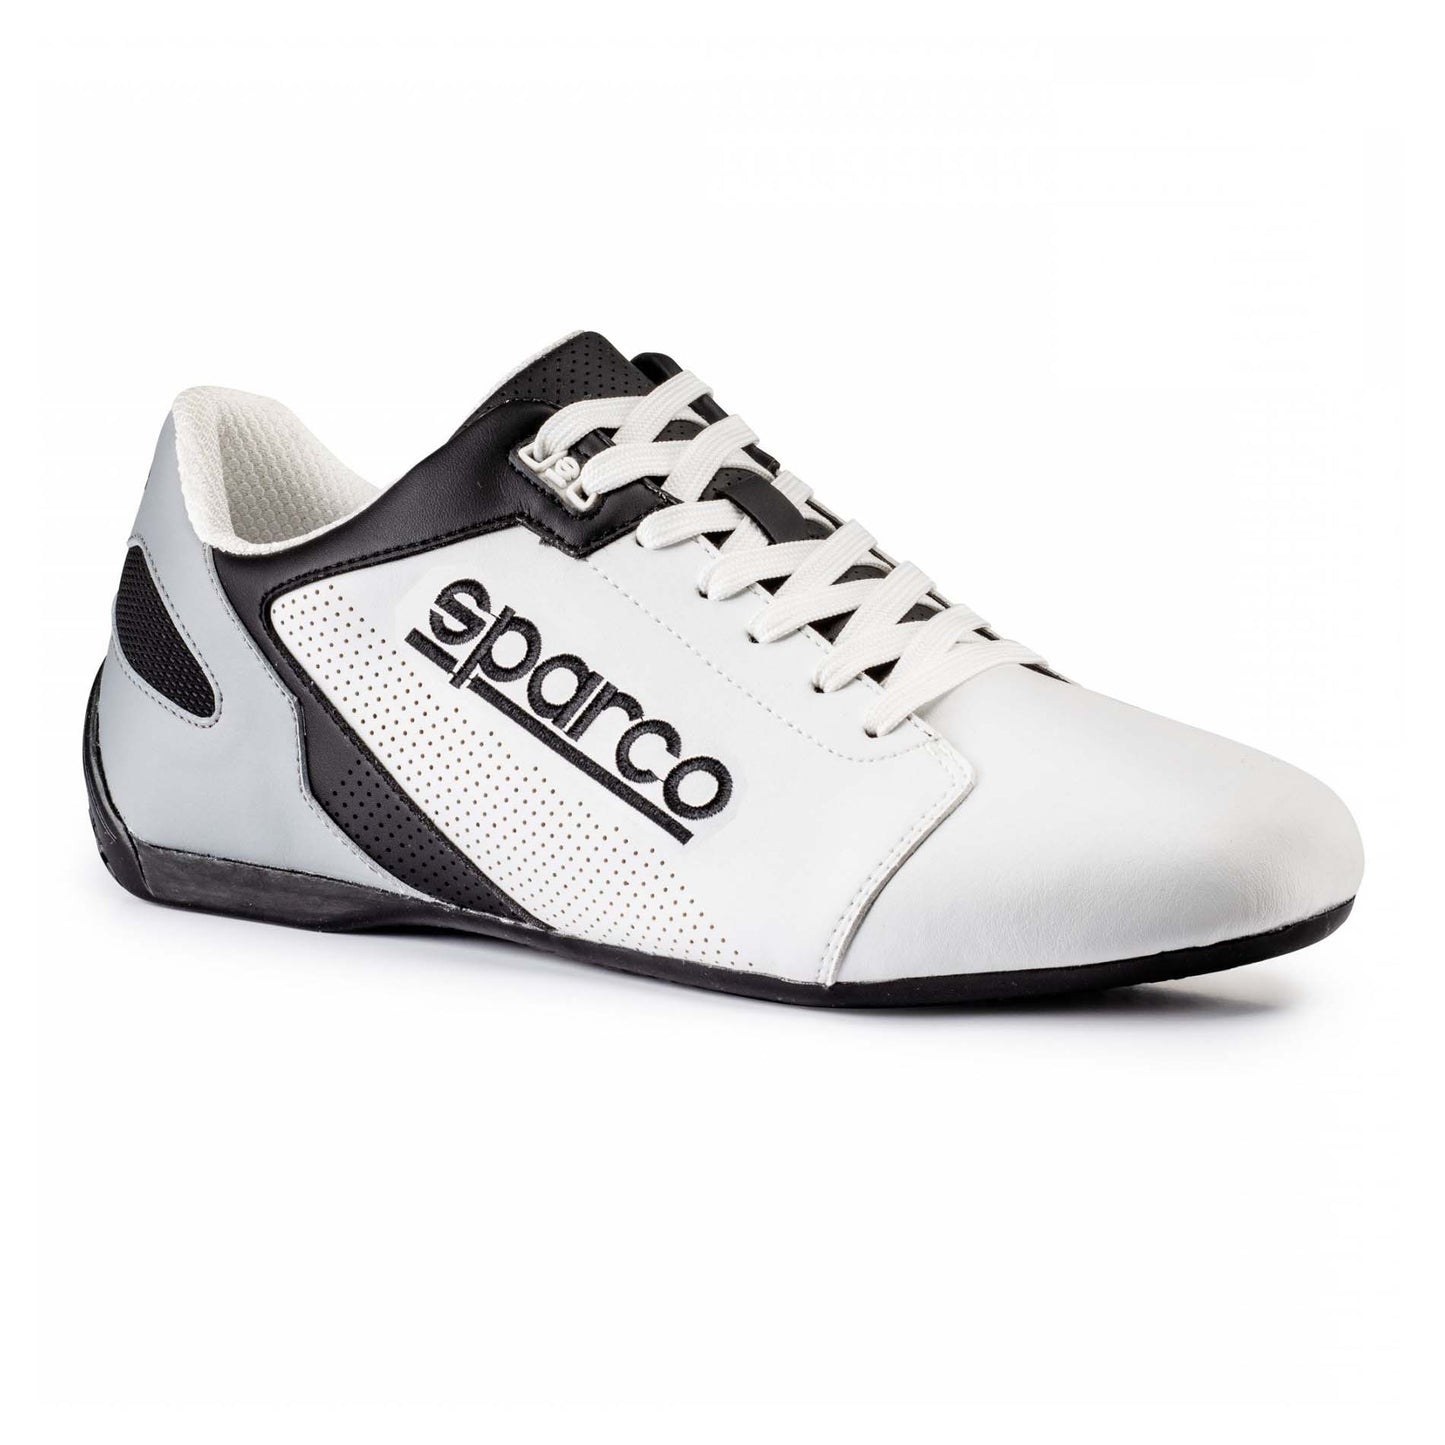 Sparco SL-17 Shoes - 2022 Colors